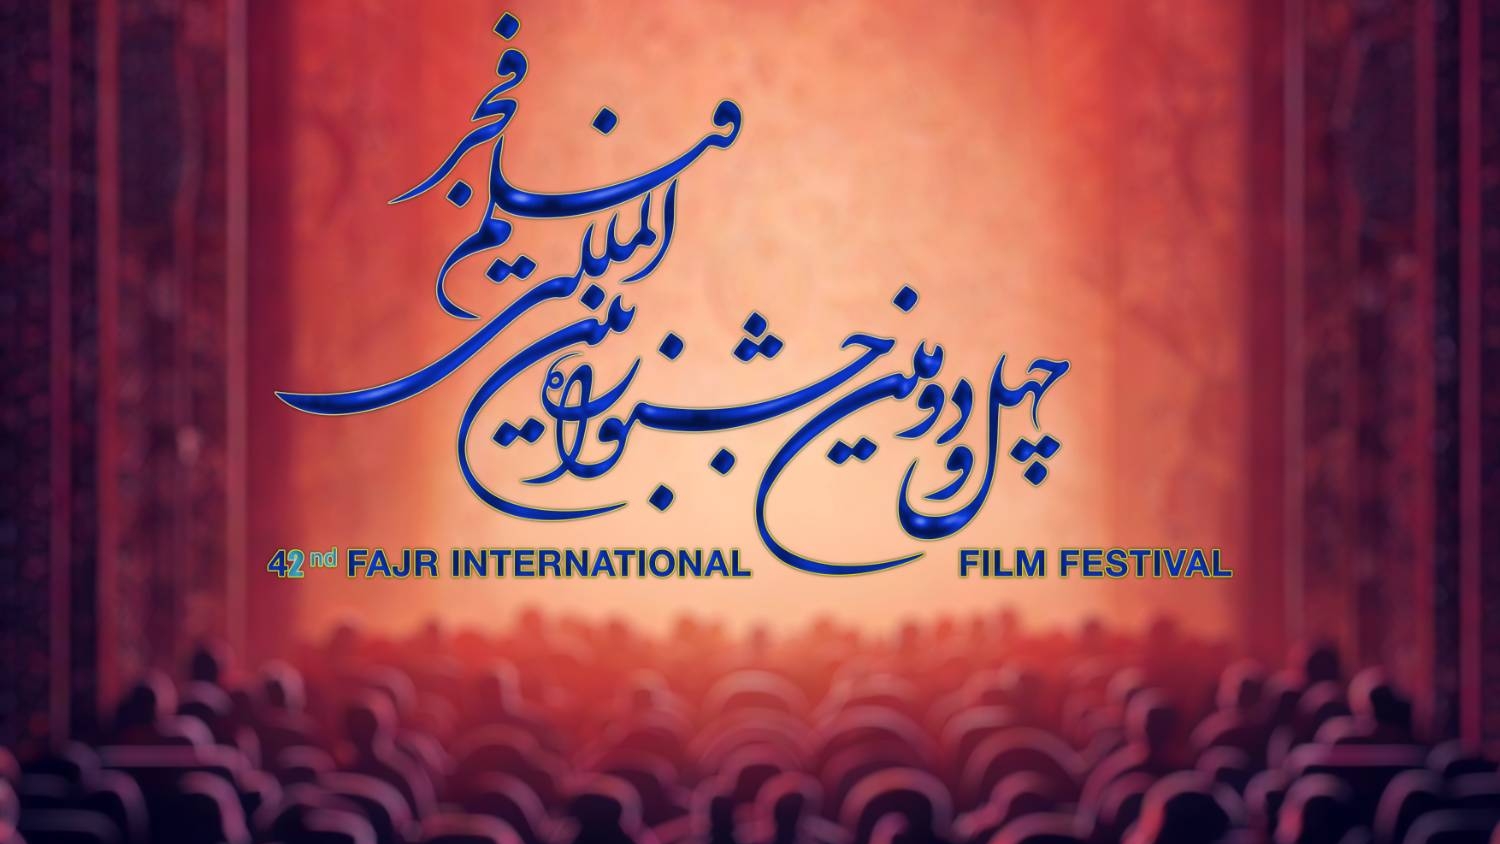 مهرجان فجر الـسينمائي في ايران: انطلاق عروض الافلام الدولية يوم السادس من فيفري وخالد هويسة ضيف شرف 